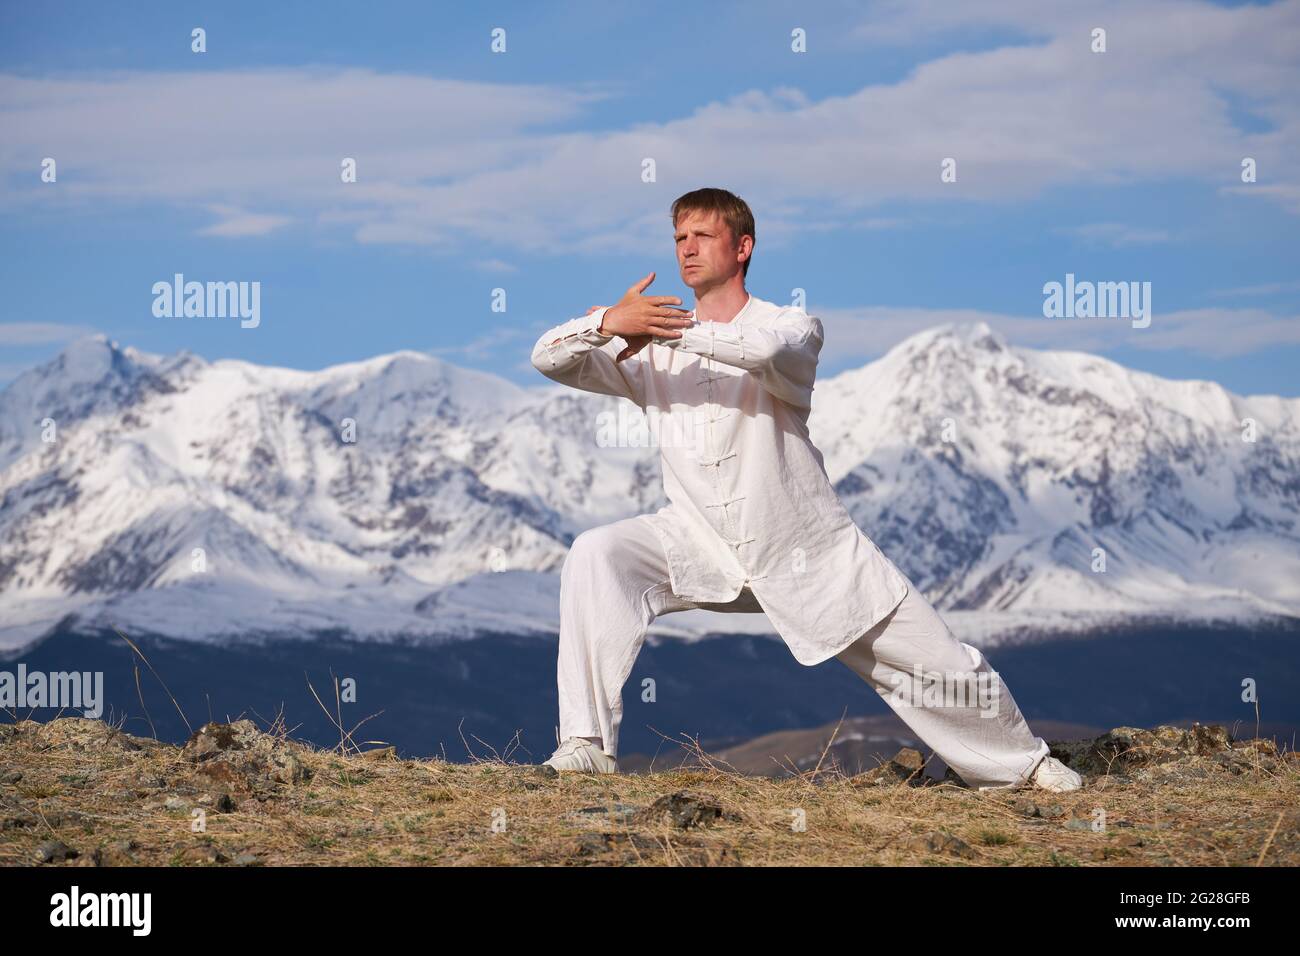 Wushu maestro en un entrenamiento de uniformes deportivos blancos en la colina. El campeón de Kungfu entrena las artes maritiales en la naturaleza sobre el fondo de las montañas nevadas. Foto de stock